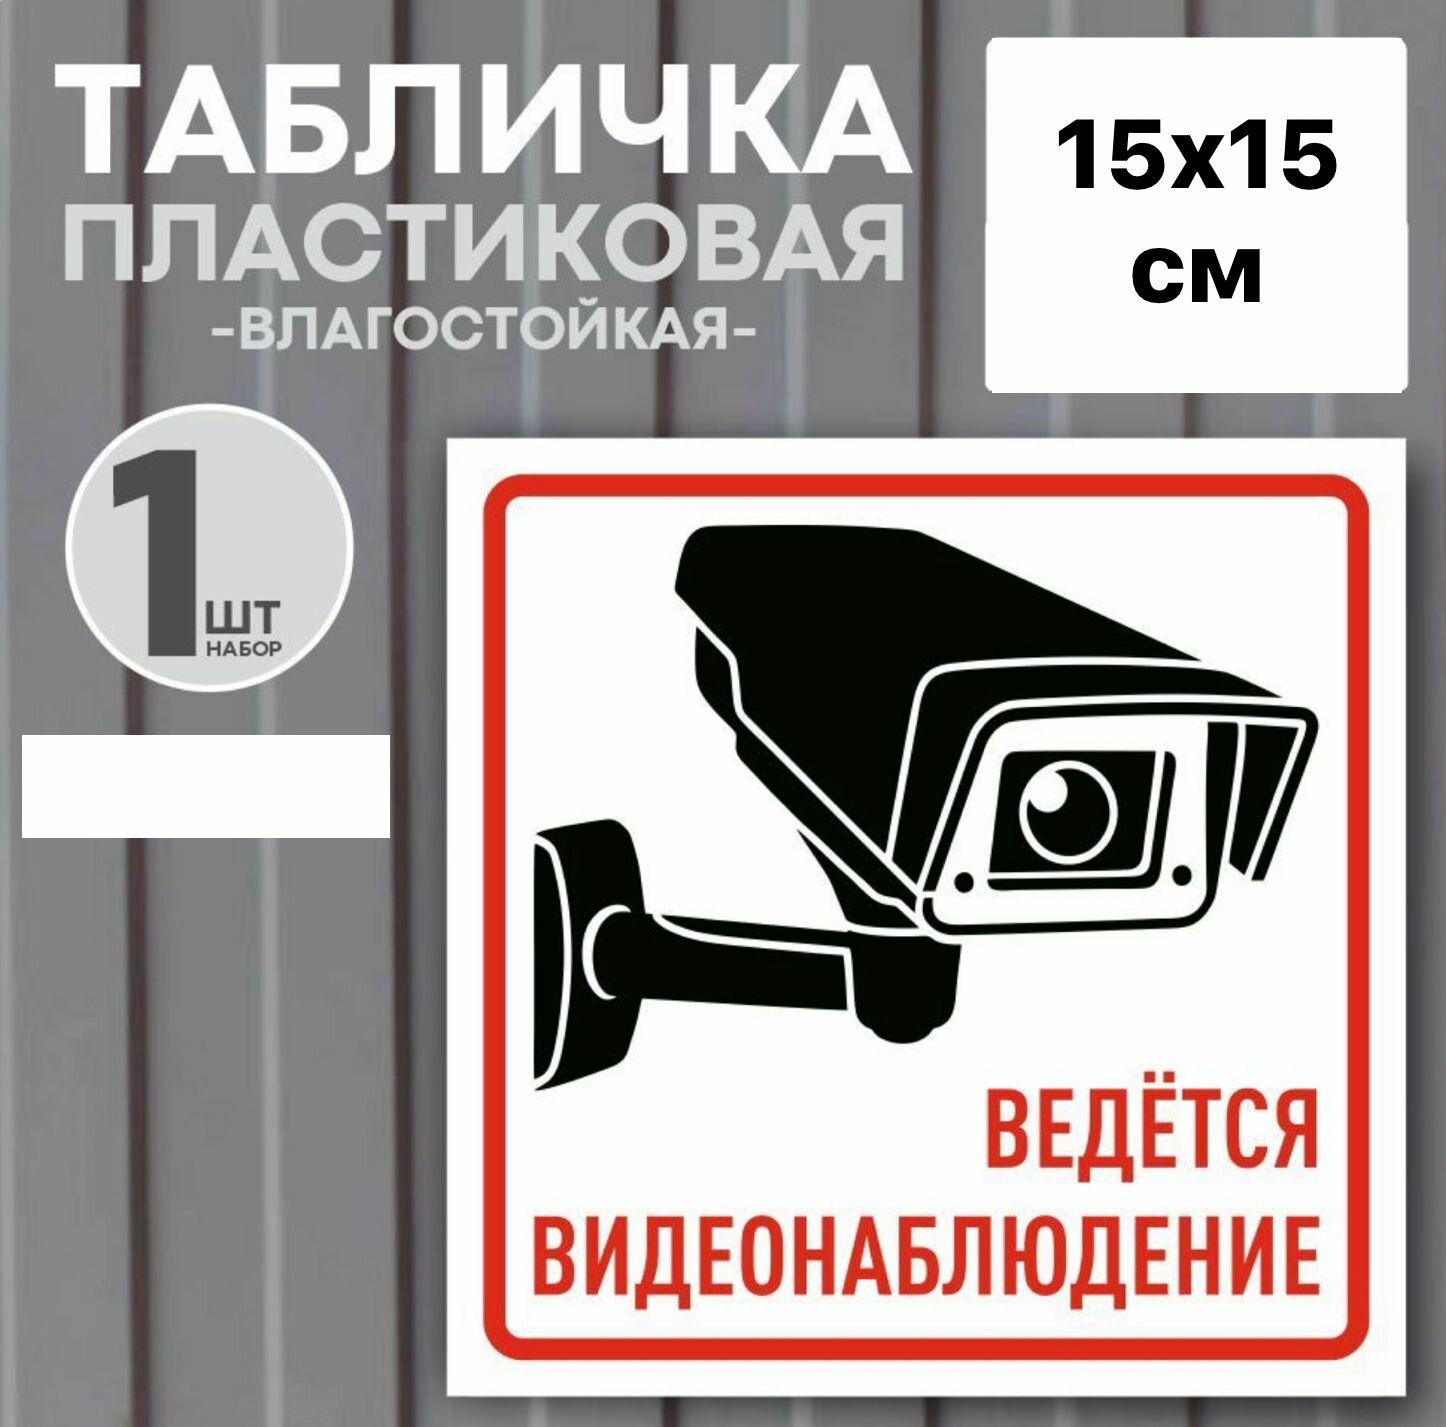 Табличка "Ведется видеонаблюдение" 15х15 см